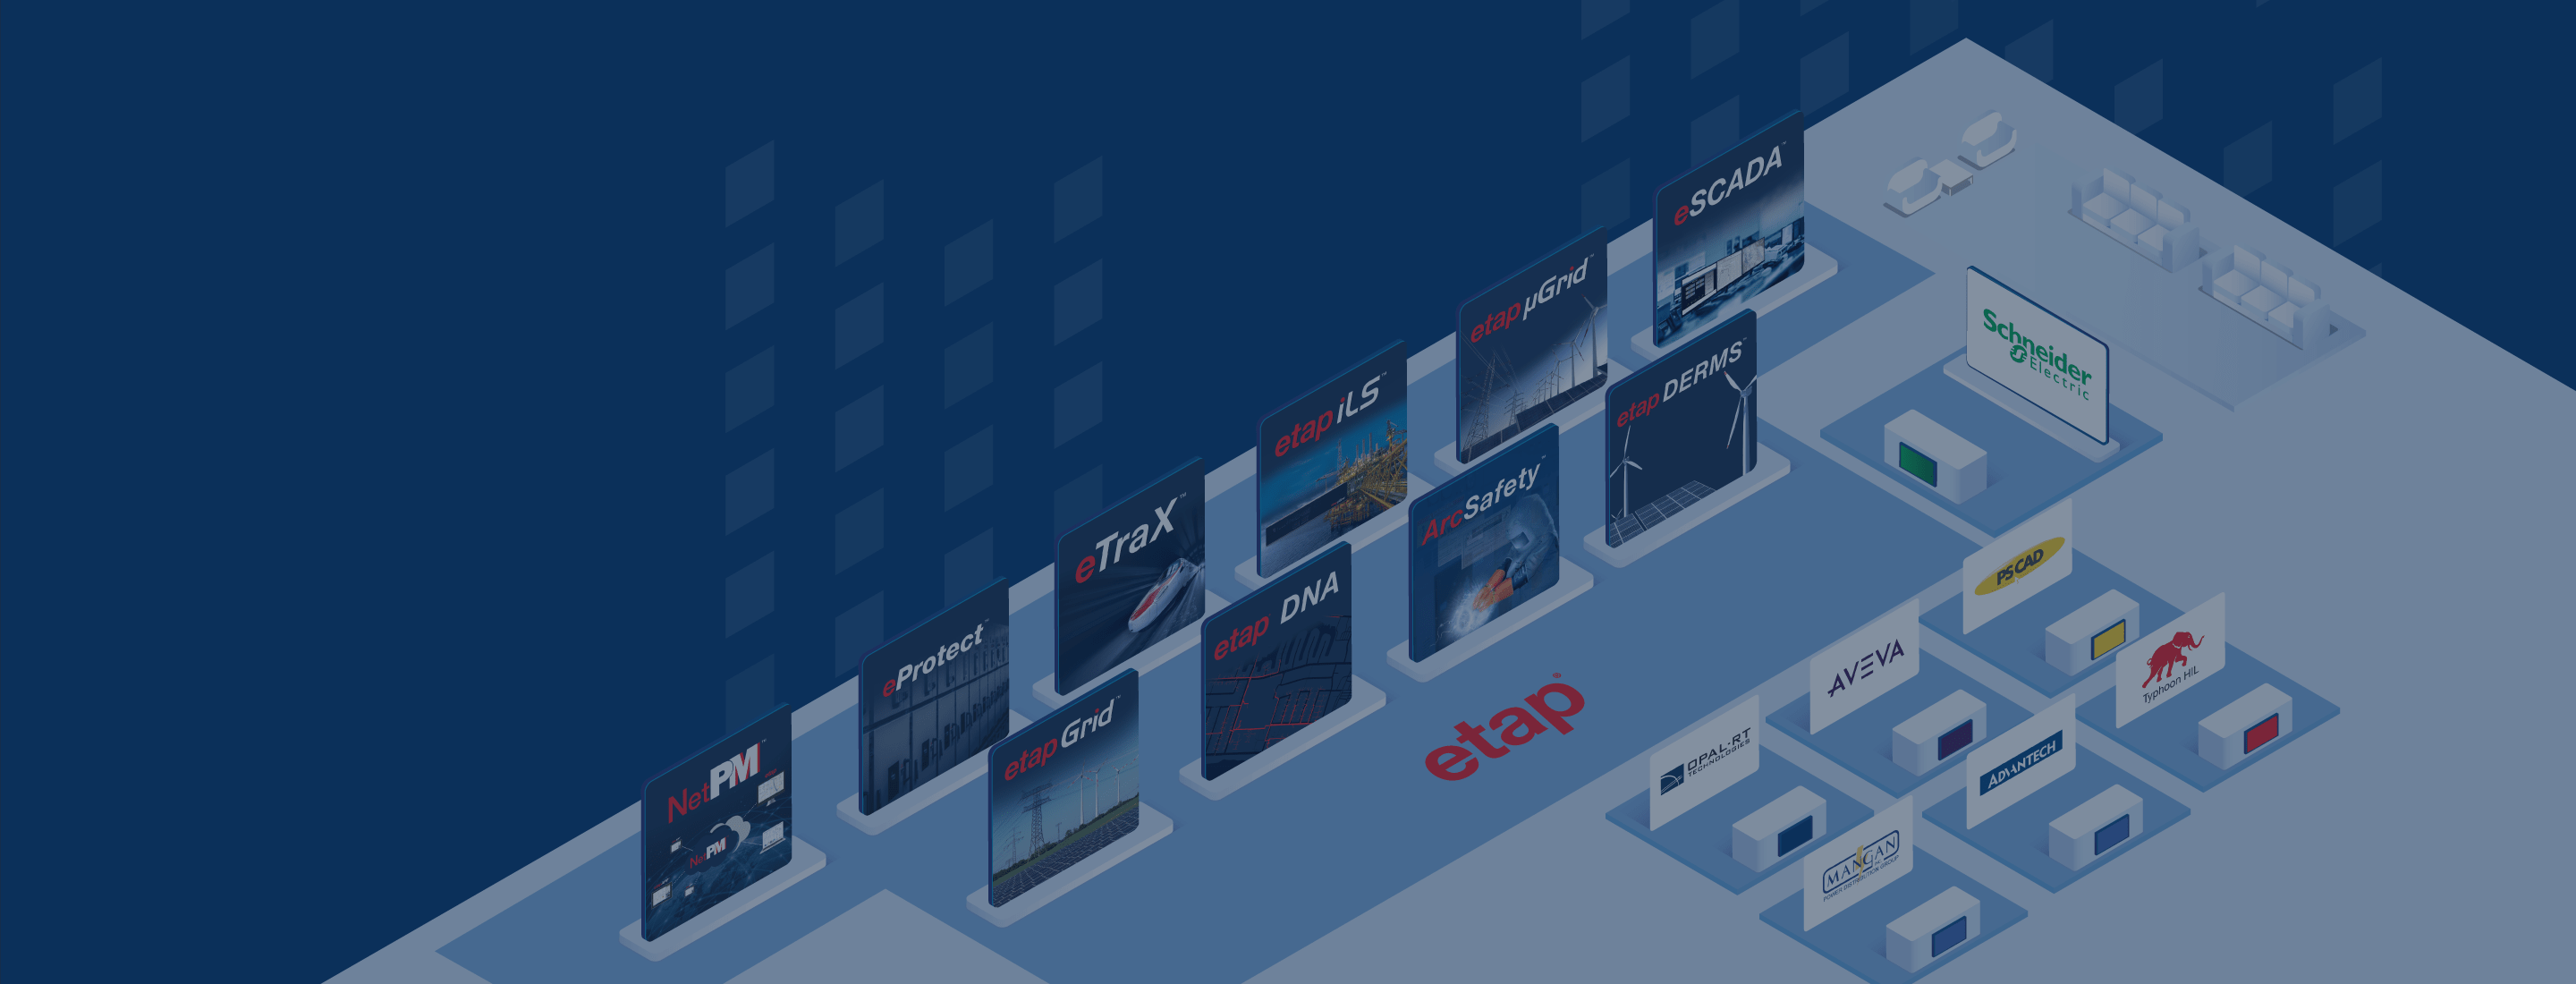 EGC2020-TechExpo-Banner